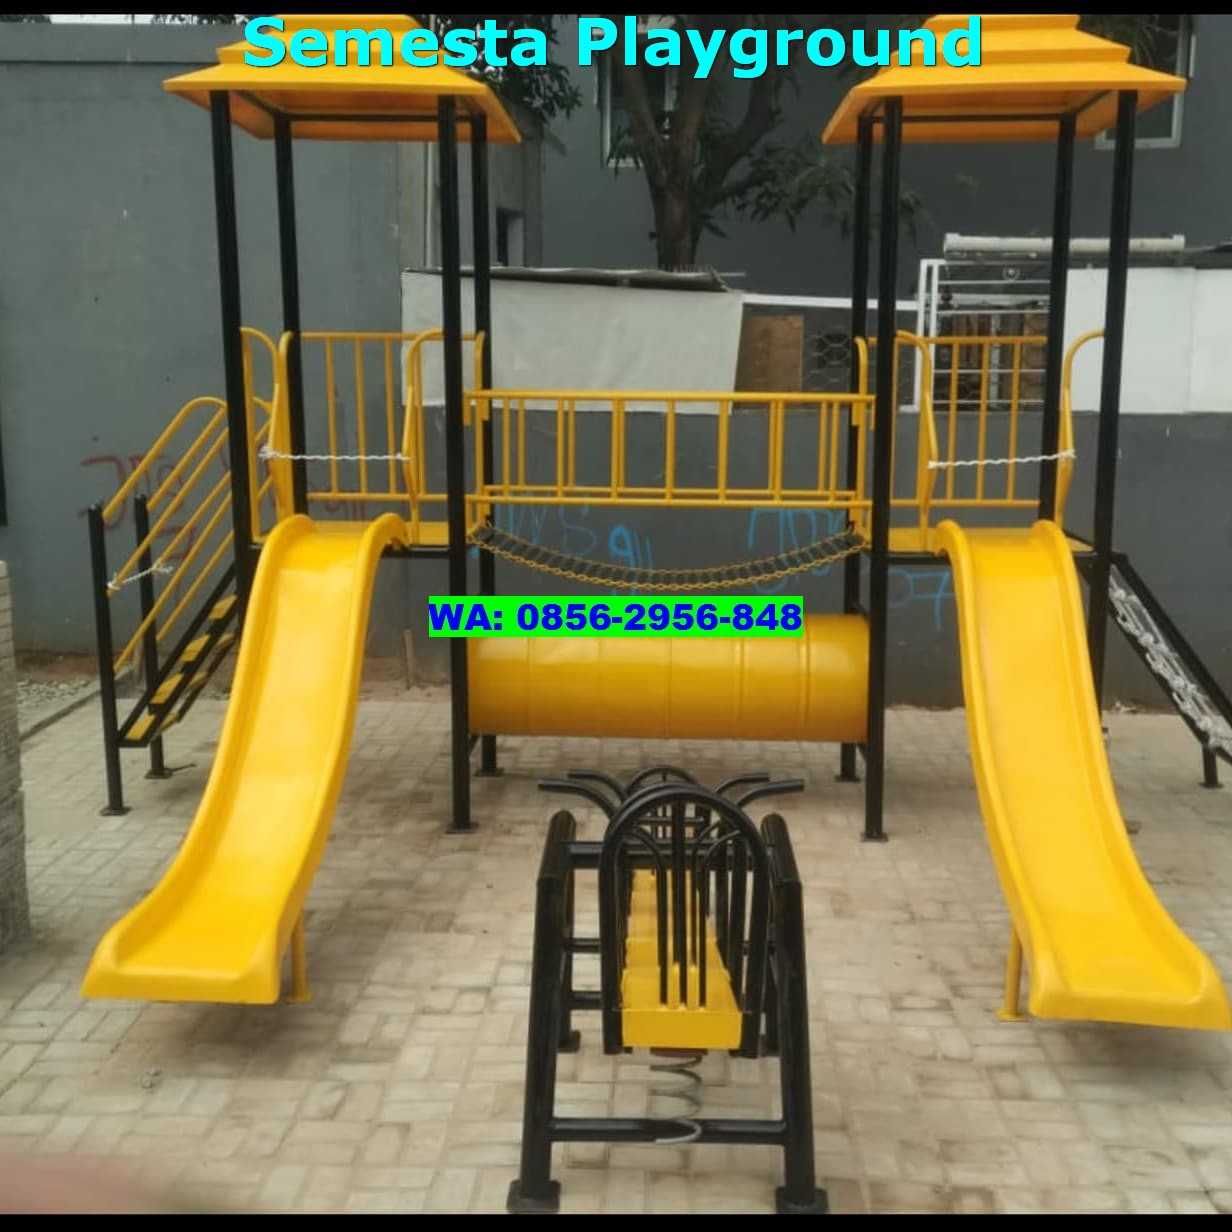 Jual Playground Anak Papua